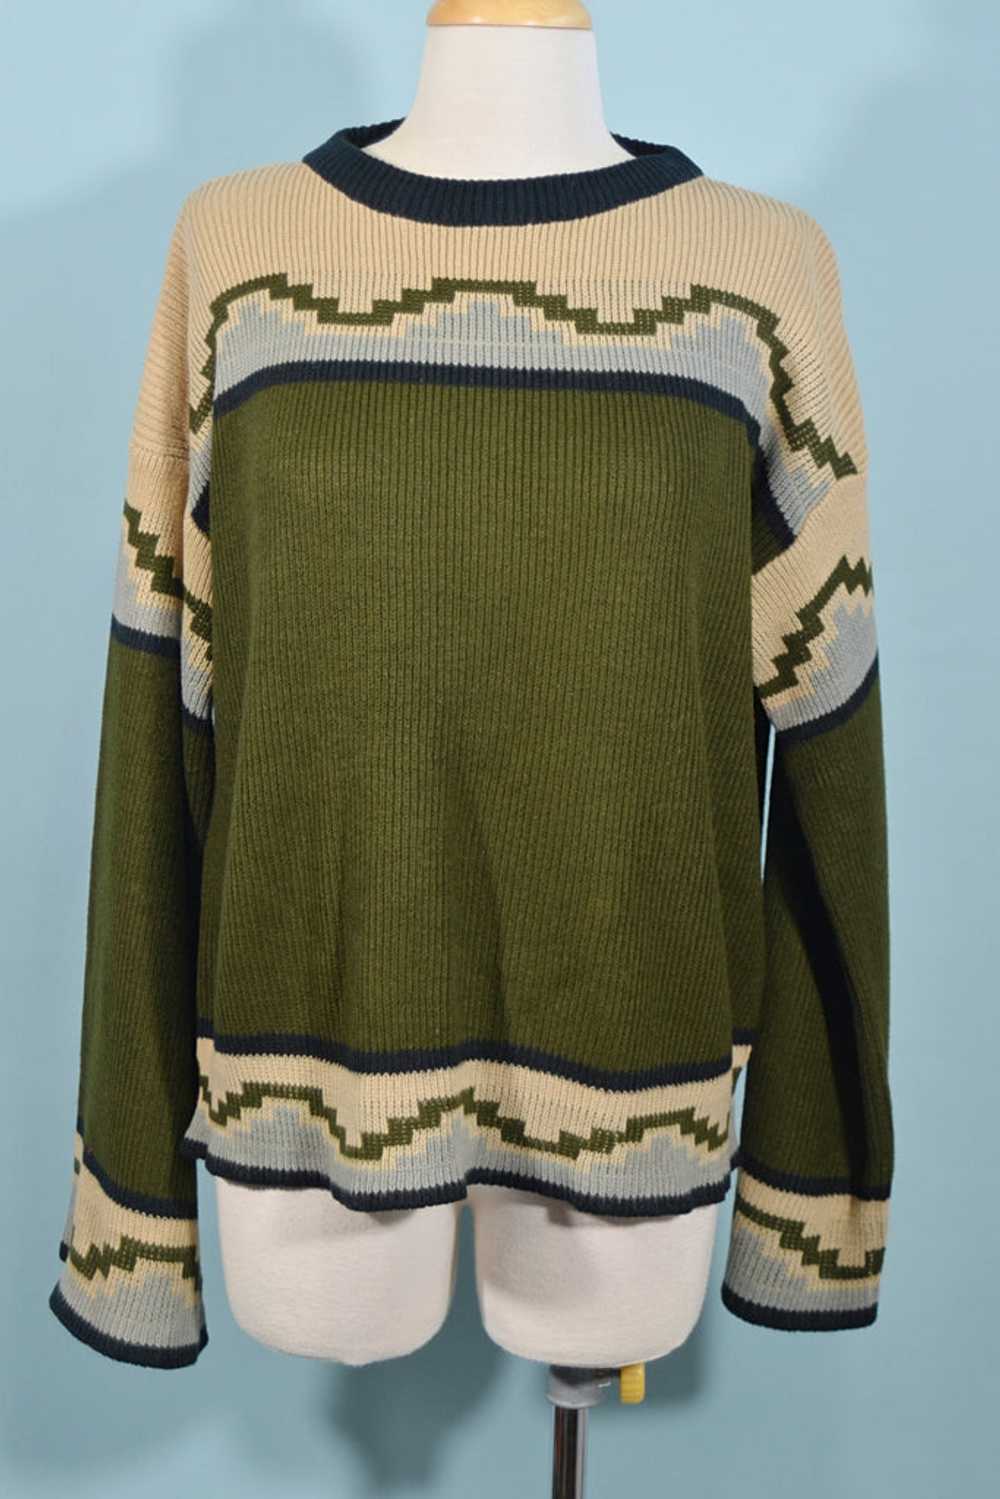 Vintage 60s/70s Southwestern Tunic Sweater, Aztec… - image 1